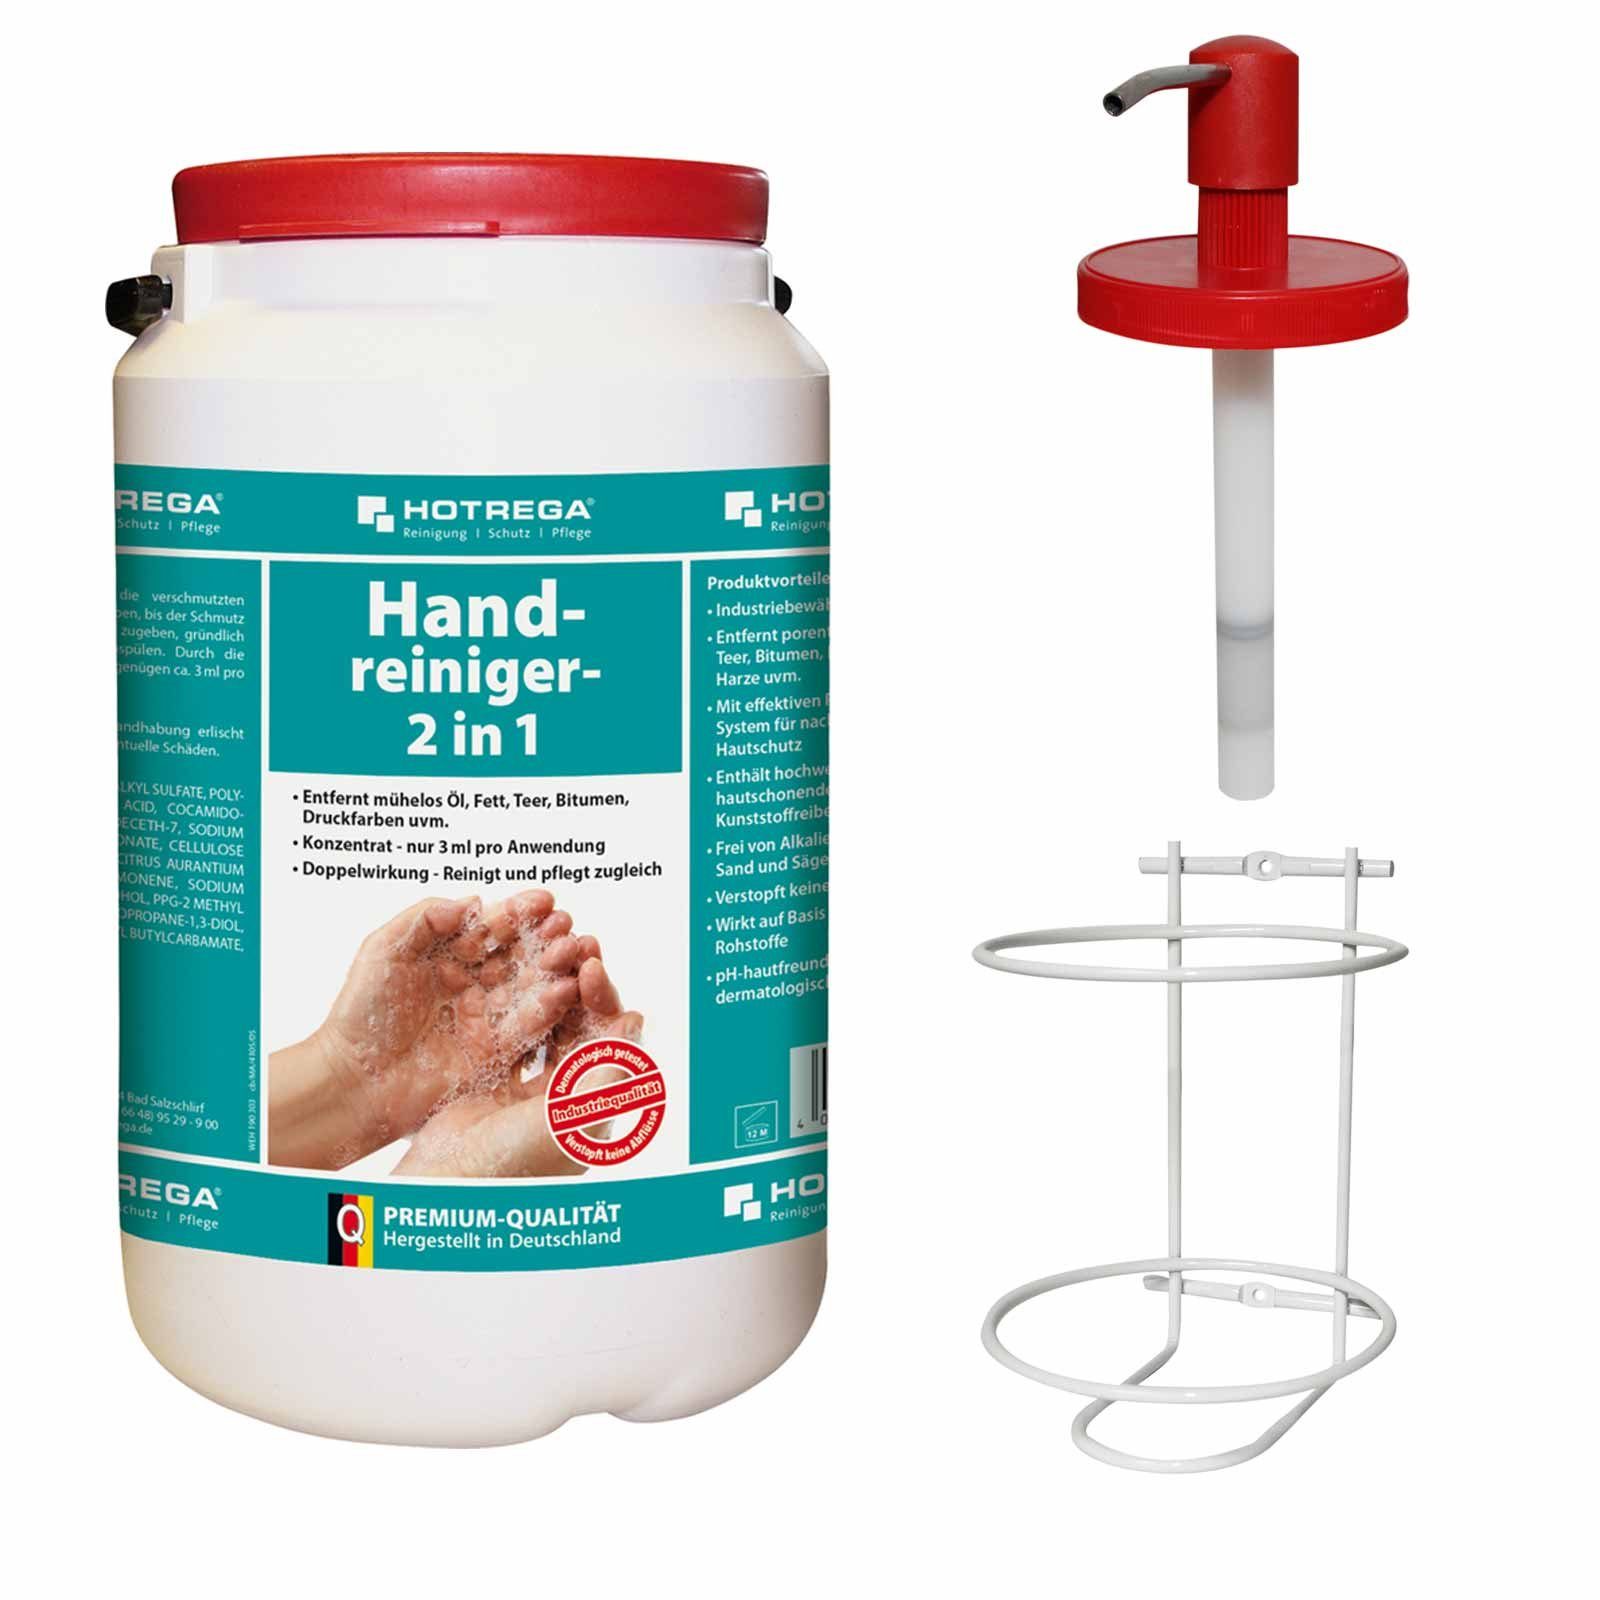 + 3L Handcreme Handreiniger HOTREGA® 2in1 Hautpflege Hautreiniger Dosiersystem Handpflege